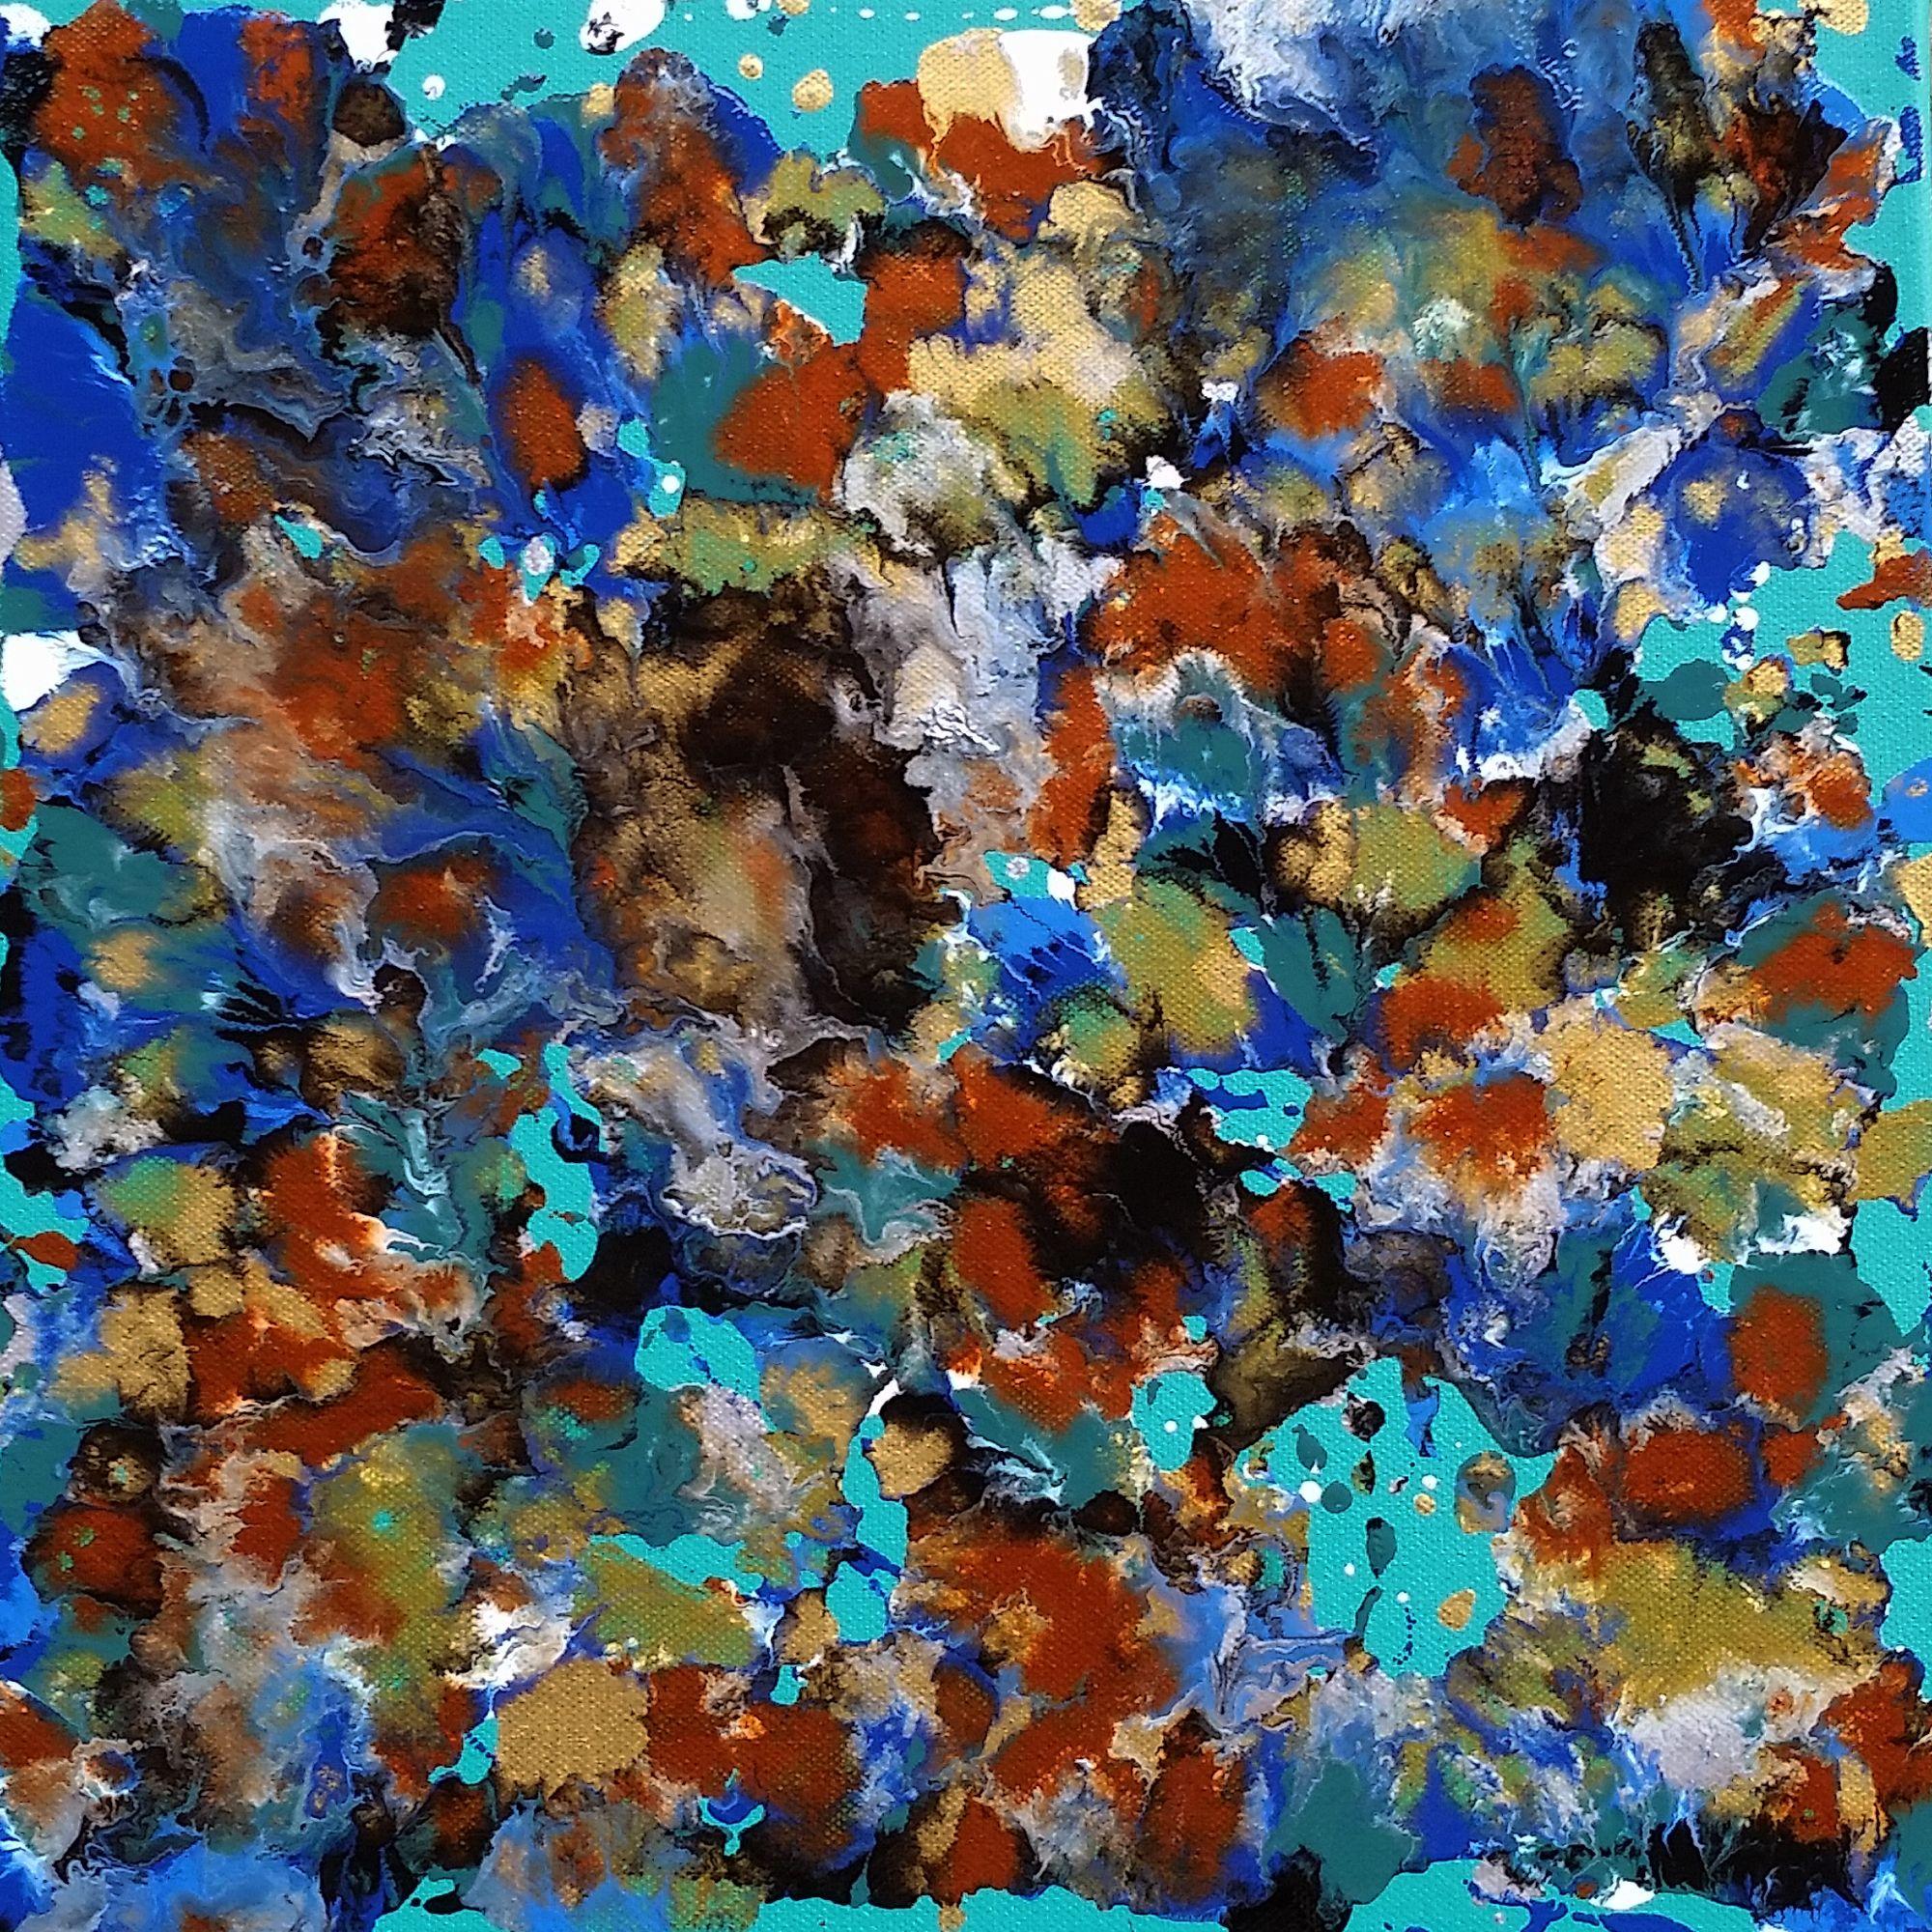 Fluid Ocean, Mixed Media on Canvas - Mixed Media Art by Alexandra Romano